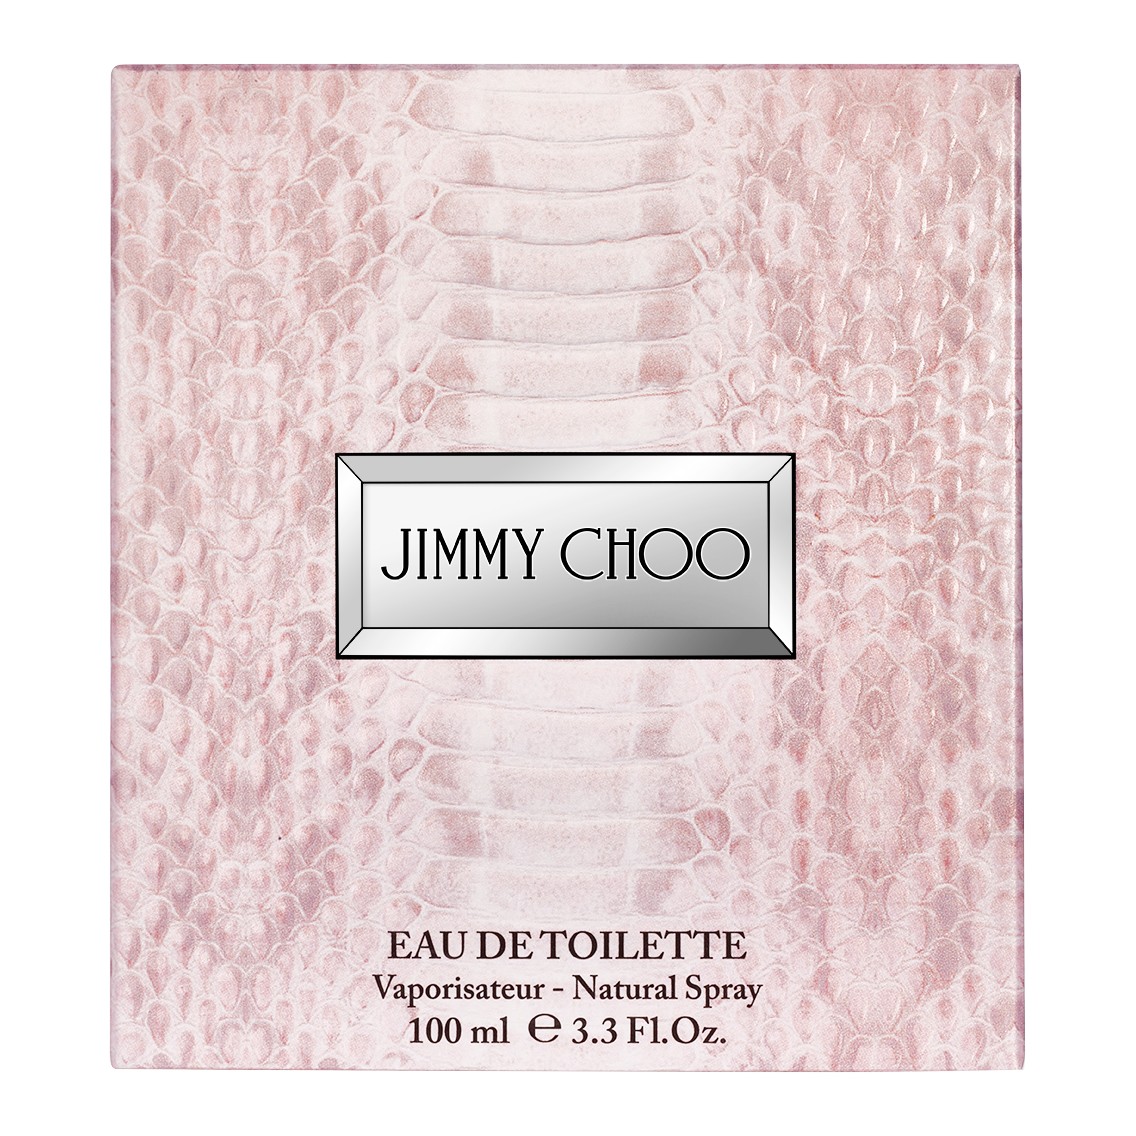 Jimmy Choo Eau de Toilette 100ml